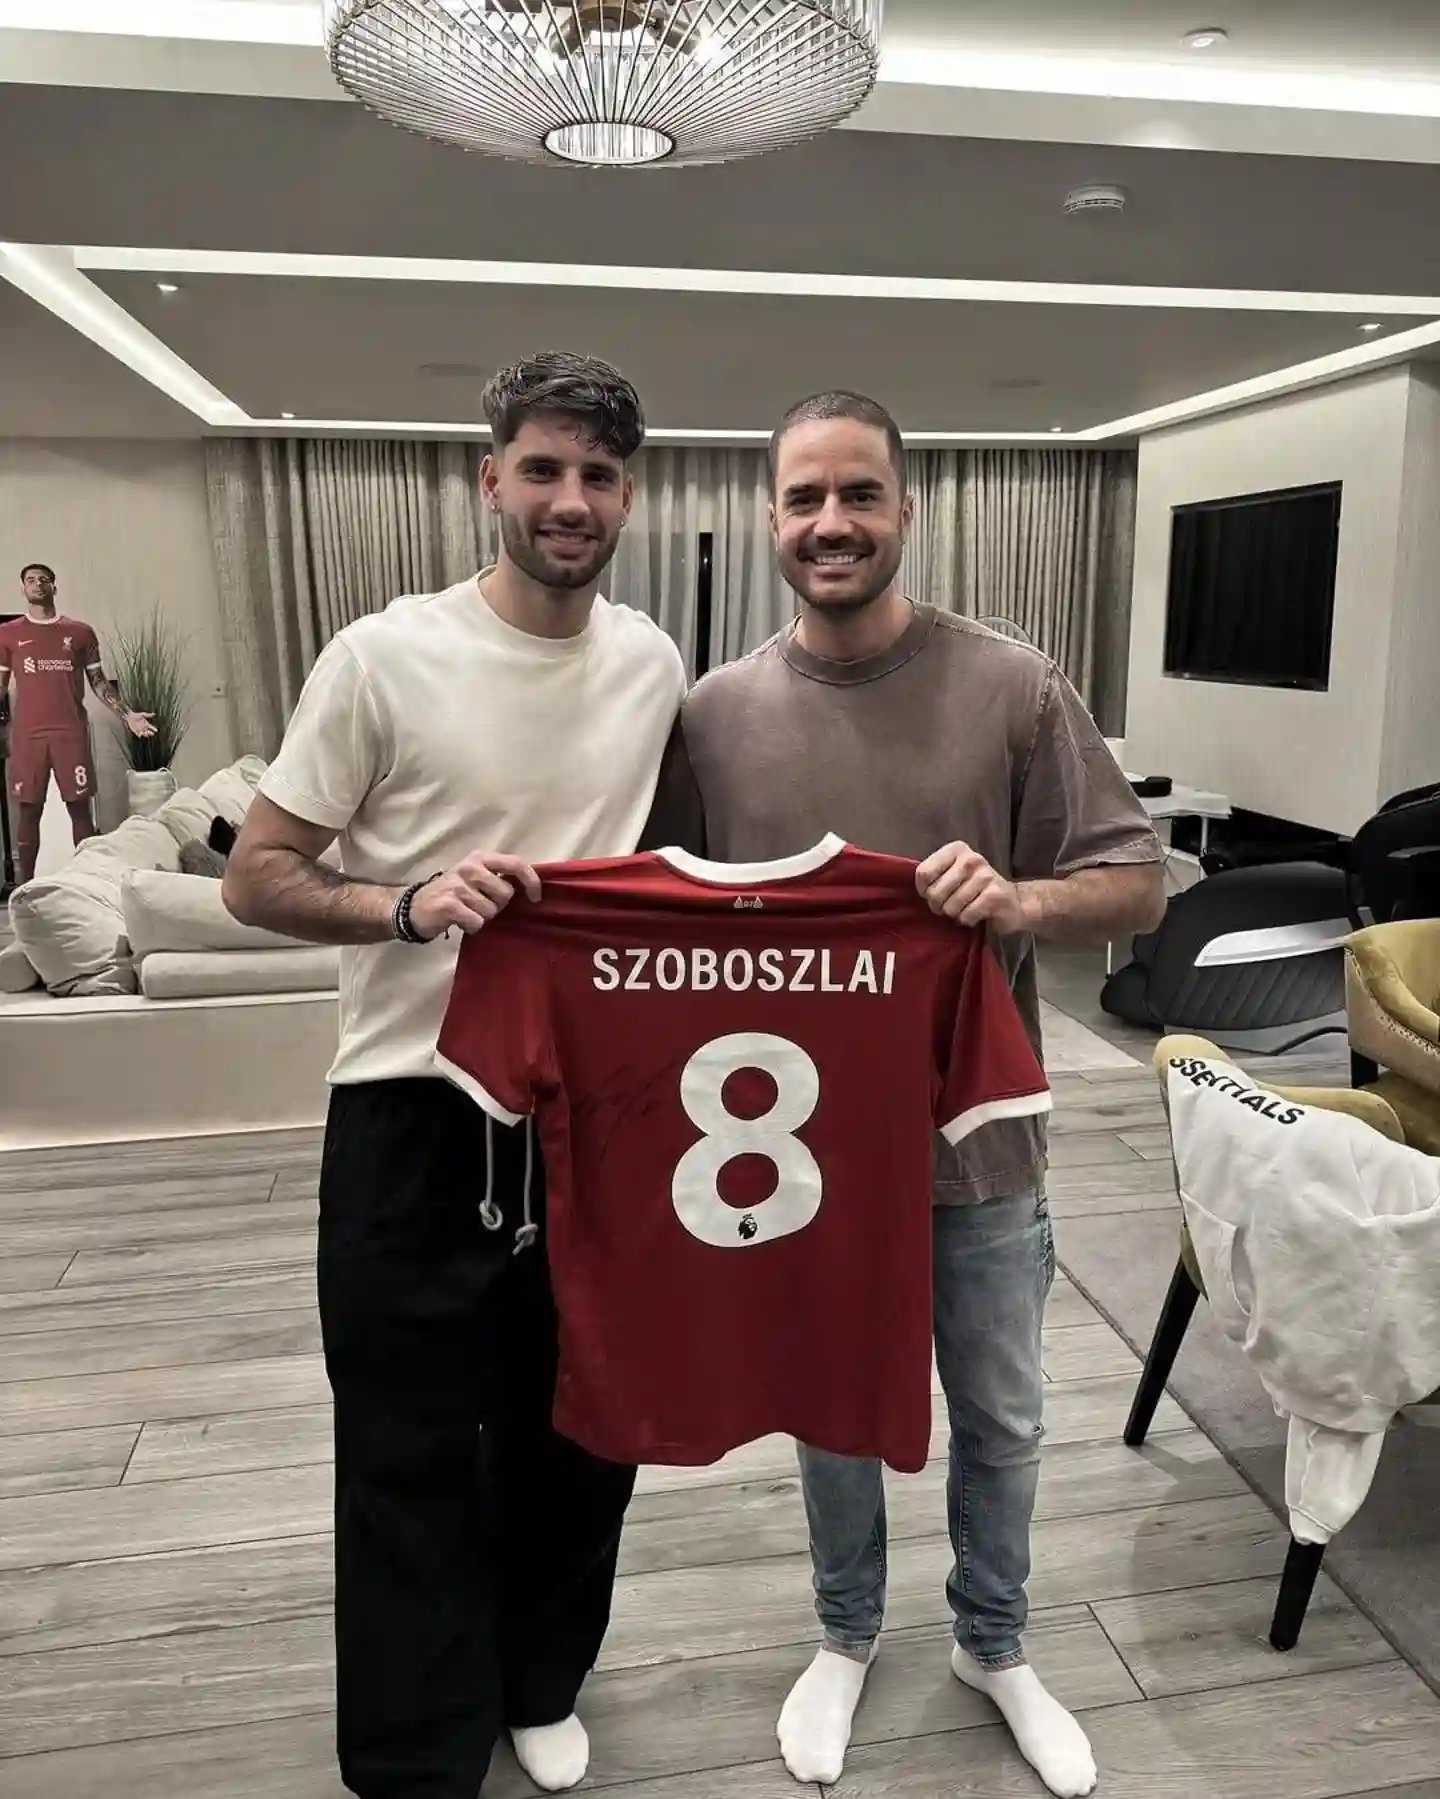 Les fans repèrent des détails incroyables dans le salon de Dominik Szoboszlai sur la publication des réseaux sociaux